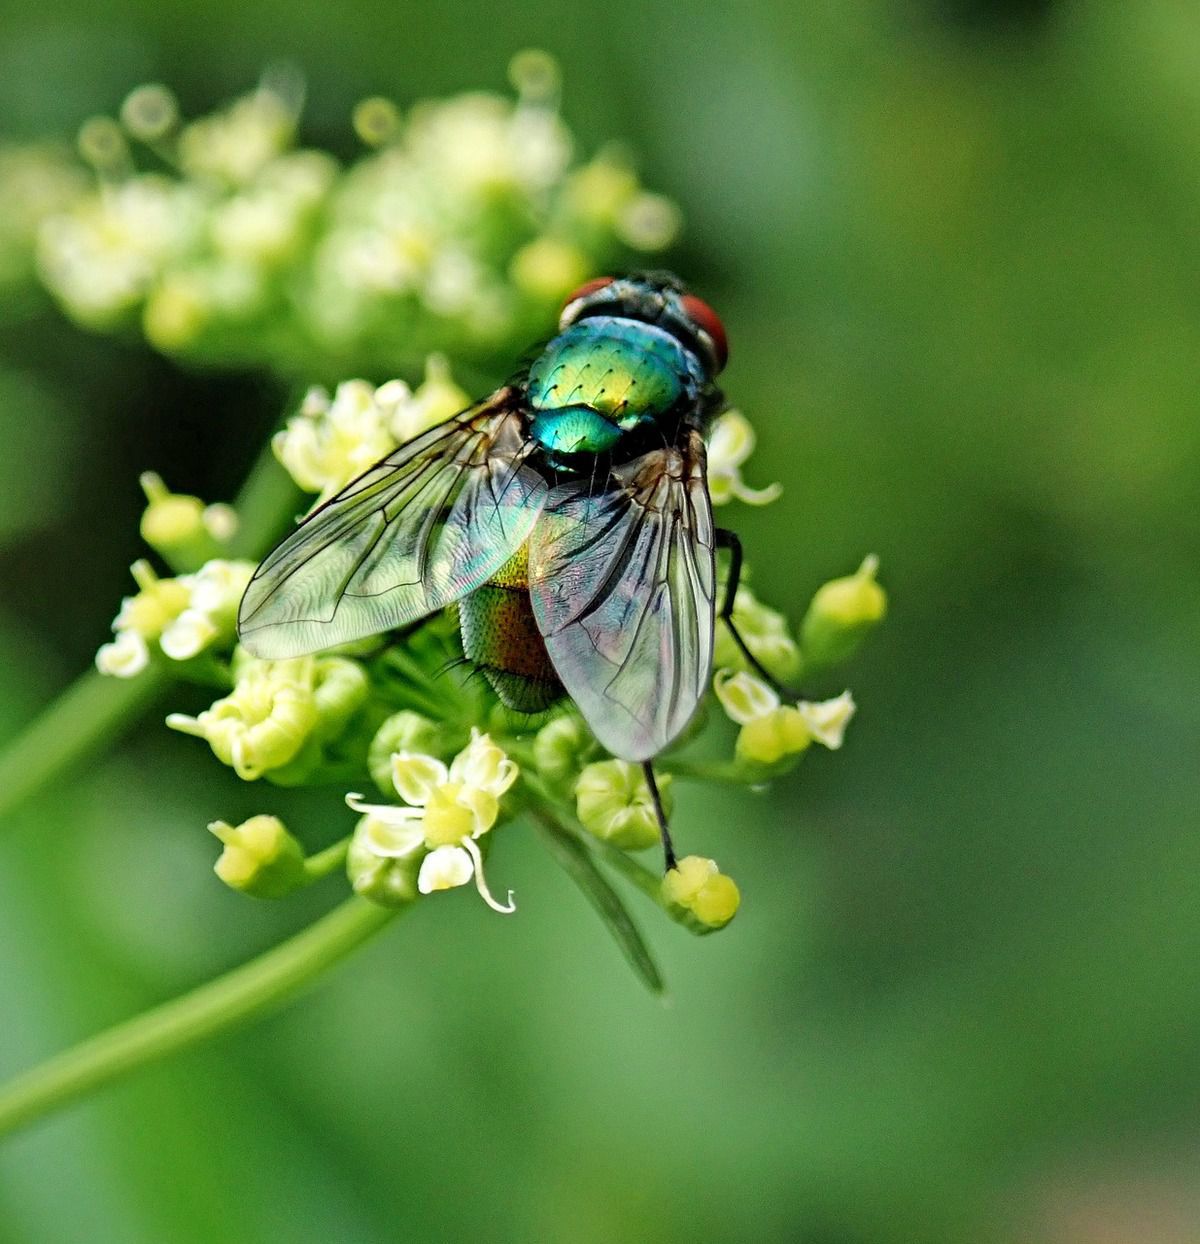 Цікаві факти про мух. Сучасна наука налічує понад 30 тисяч видів мух, і кожен рік список поповнюється.